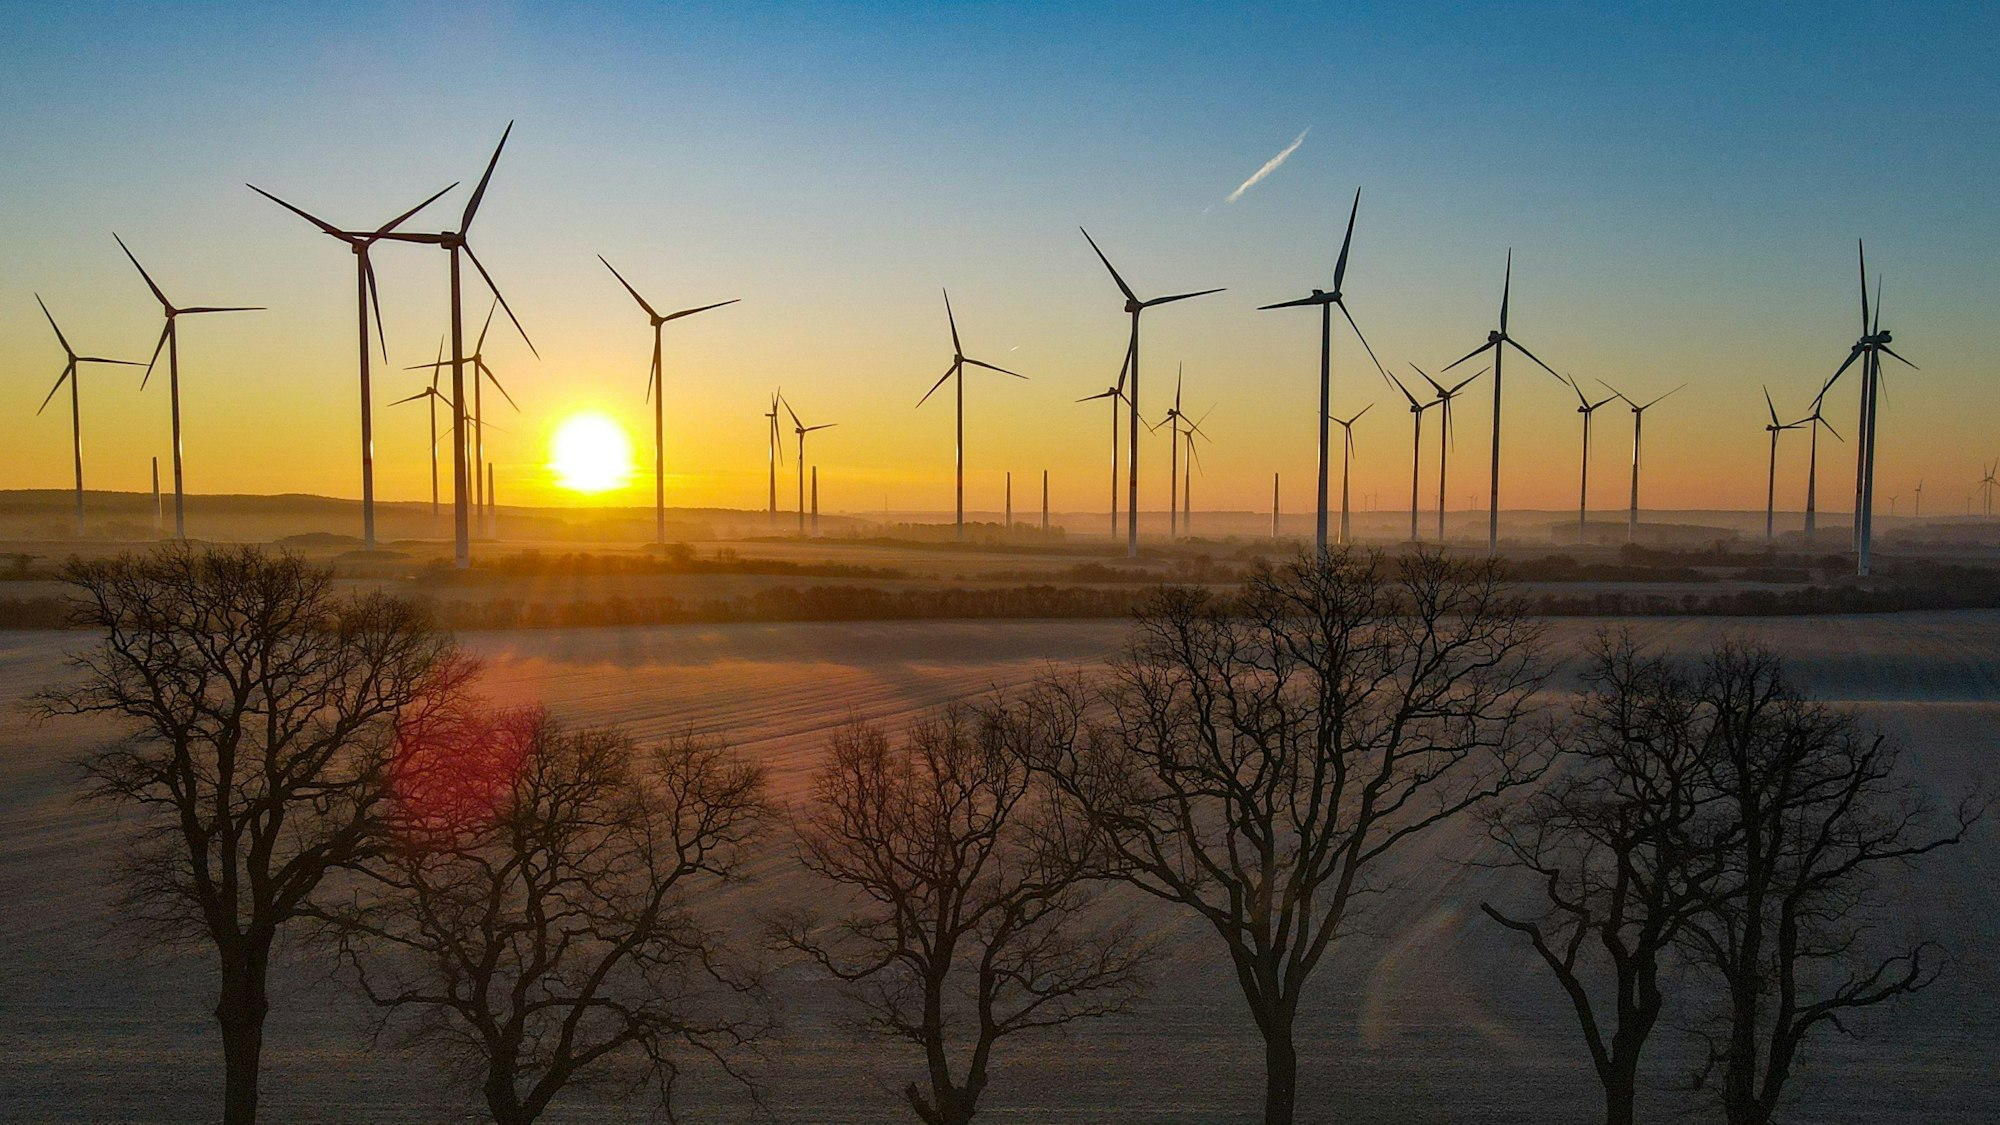 Sonnenaufgang über einem Windenergiepark